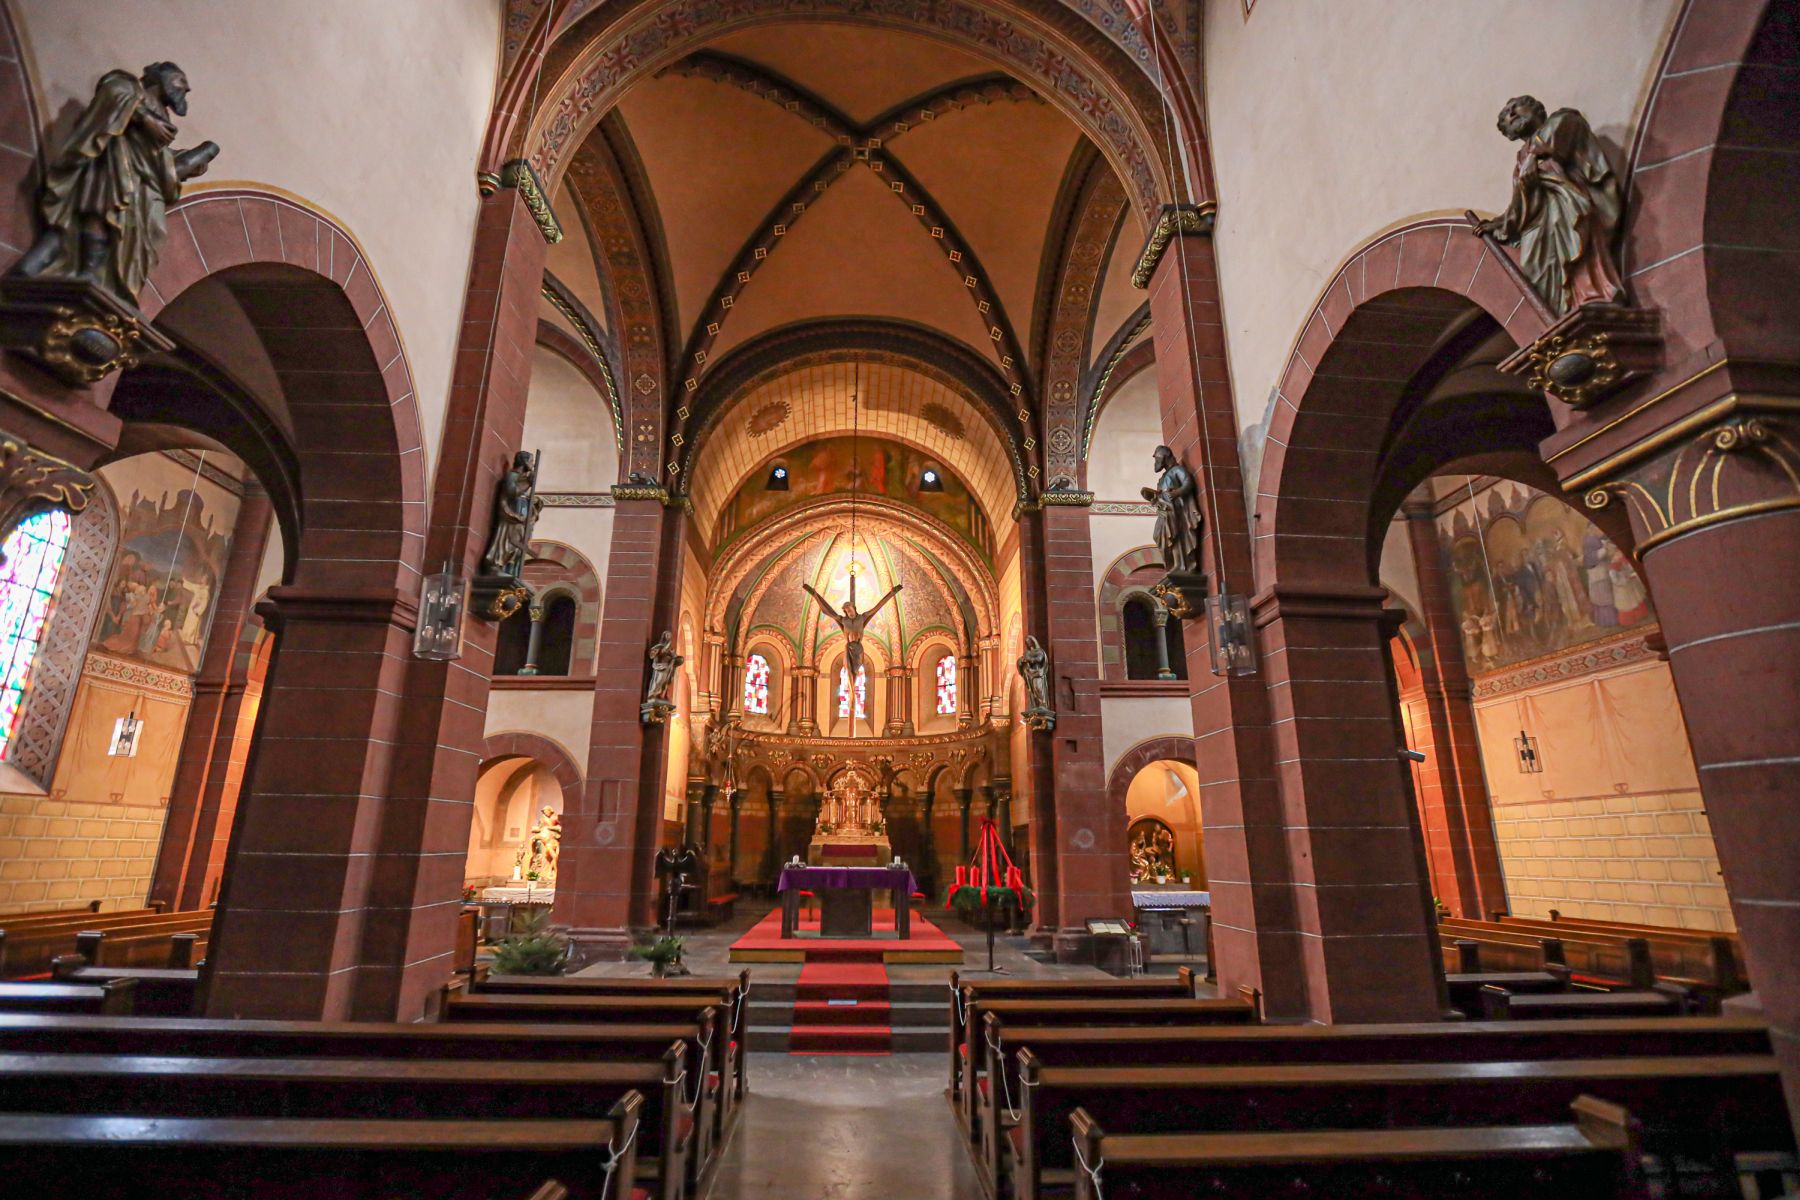 Das Foto zeigt die Pfarrkirche St. Peter von innen, zu sehen sind u. a. die Sitzbänke sowie der Bereich um den Altar.